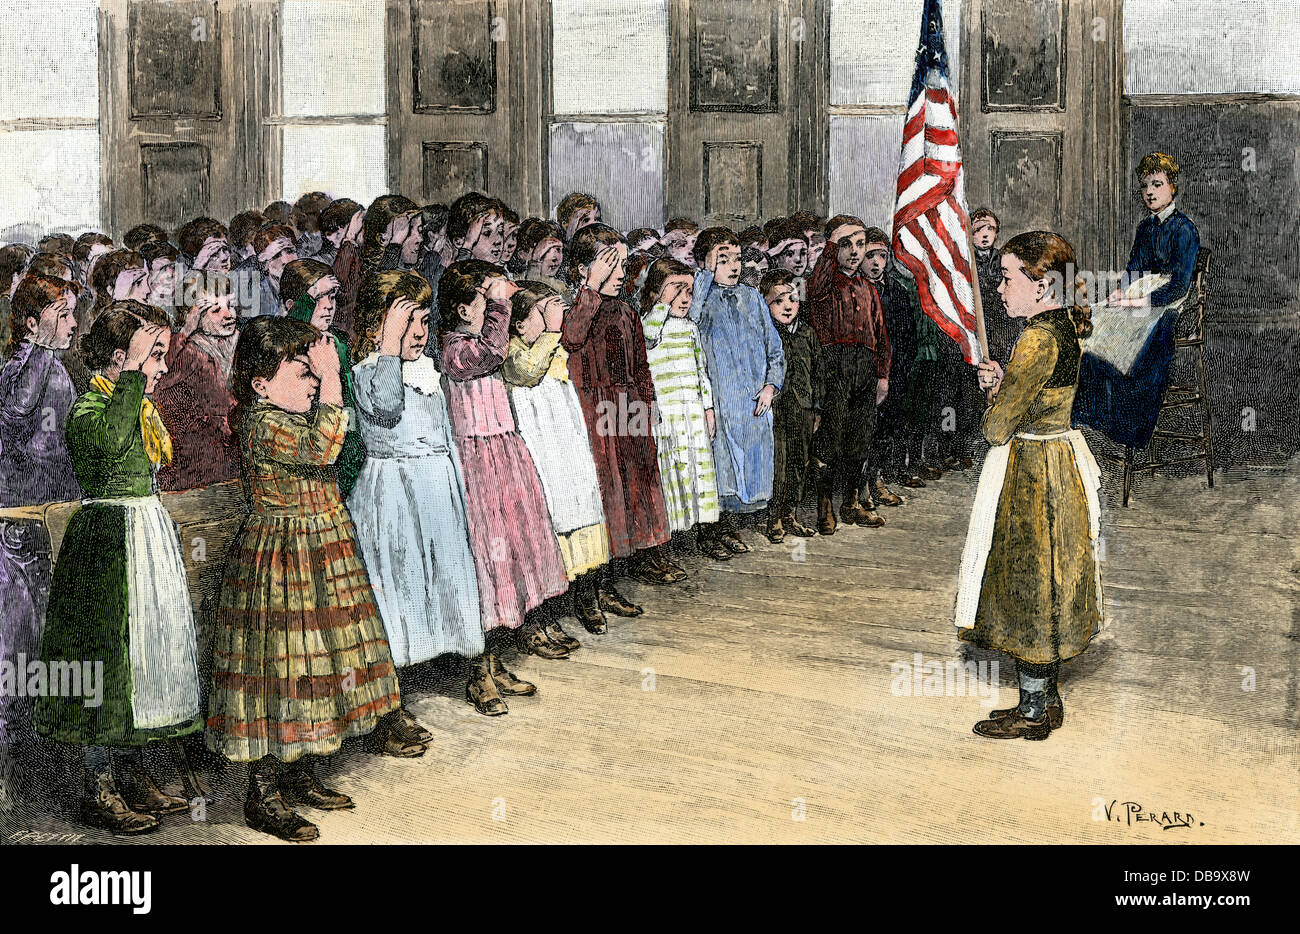 Les enfants d'immigrants en saluant le drapeau dans une école industrielle, New York, 1890. À la main, gravure sur bois Banque D'Images